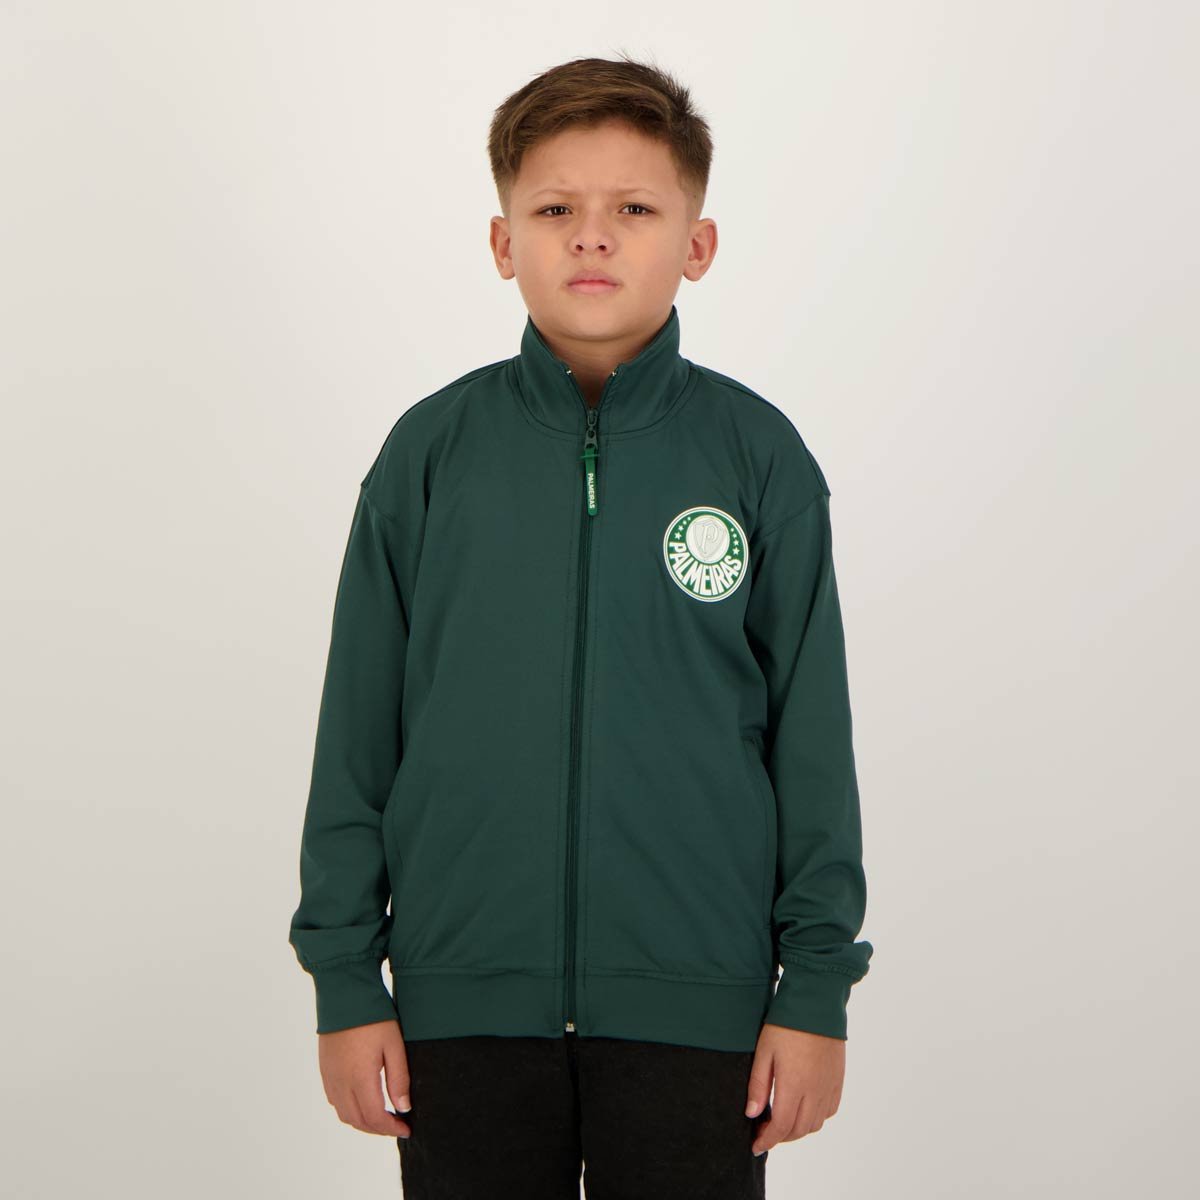 Jaqueta Palmeiras Esport Tradição Juvenil Verde